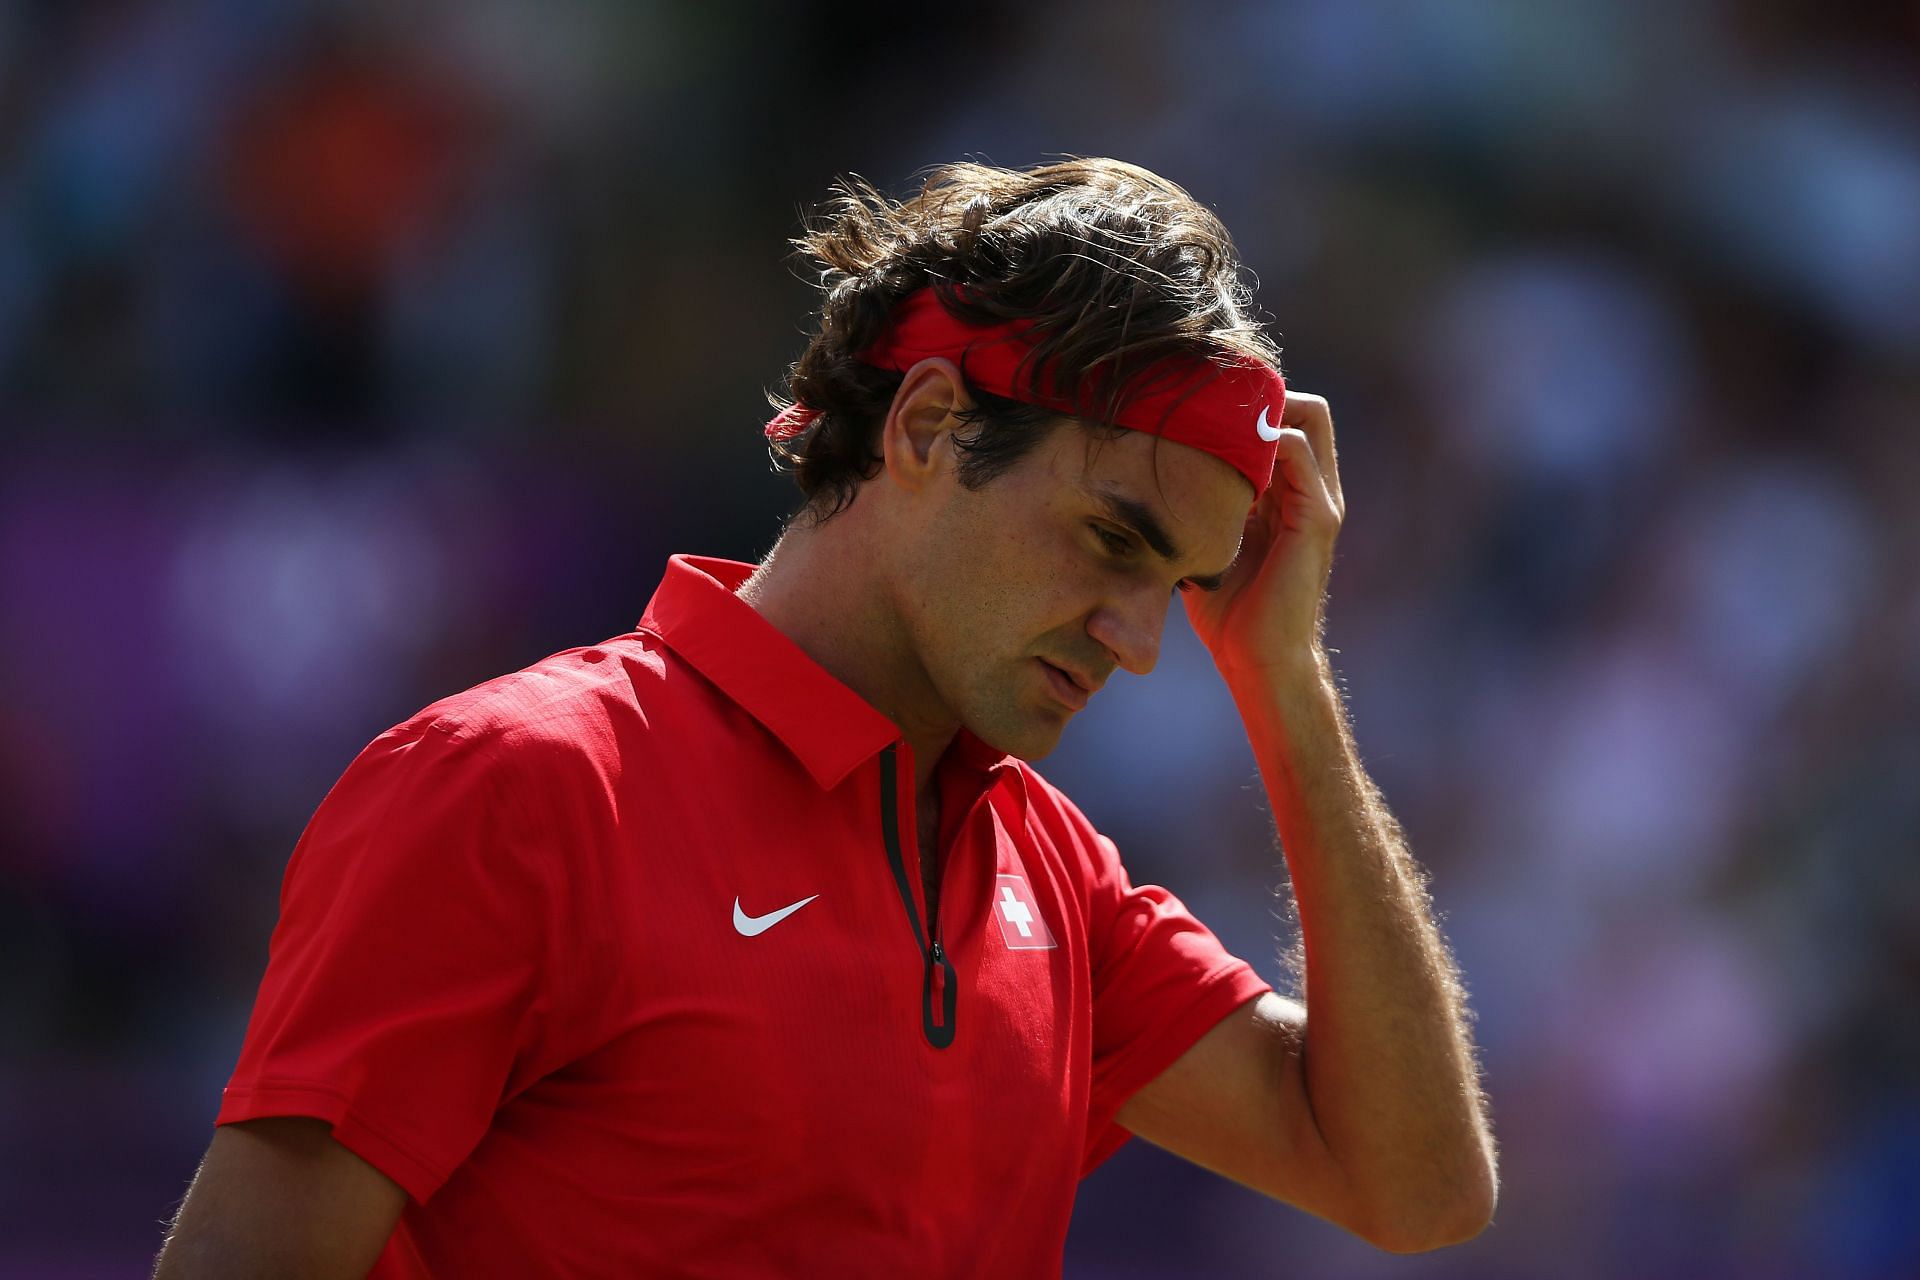 Roger Federer has faced a few big defeats on grass court